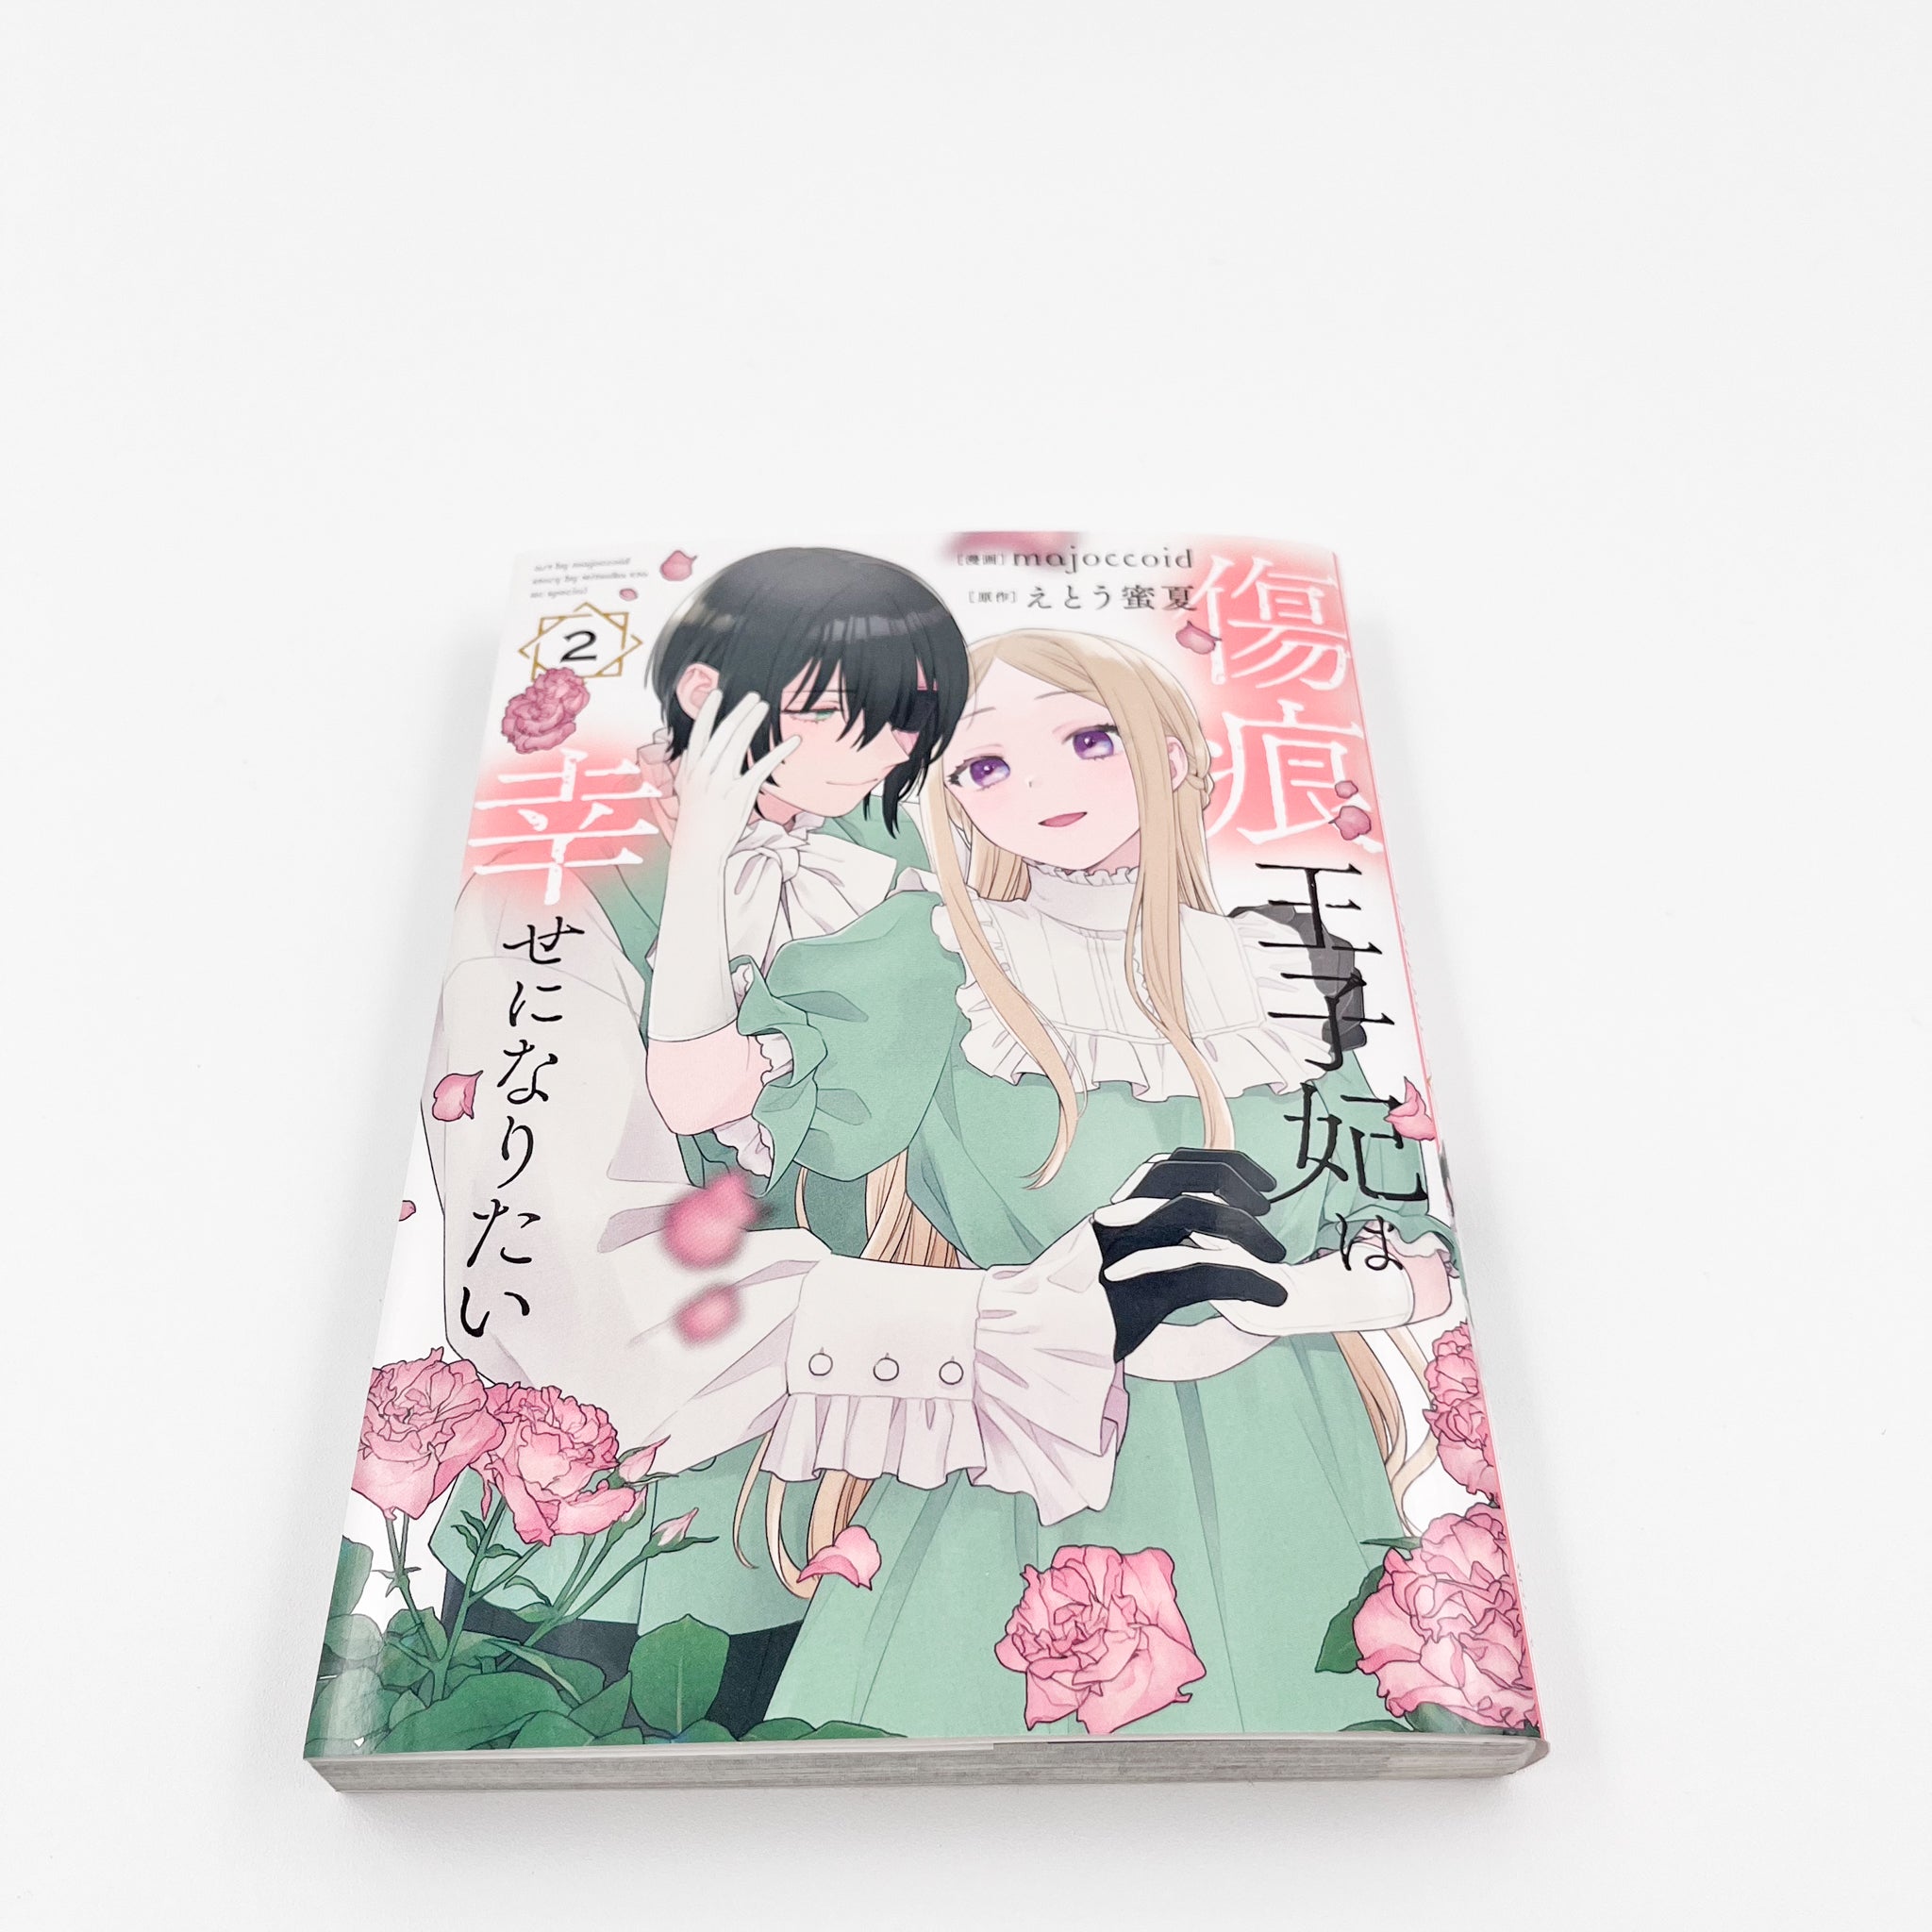 Kizuato Ouji Hi wa Shiawase ni naritai volume 2 side view